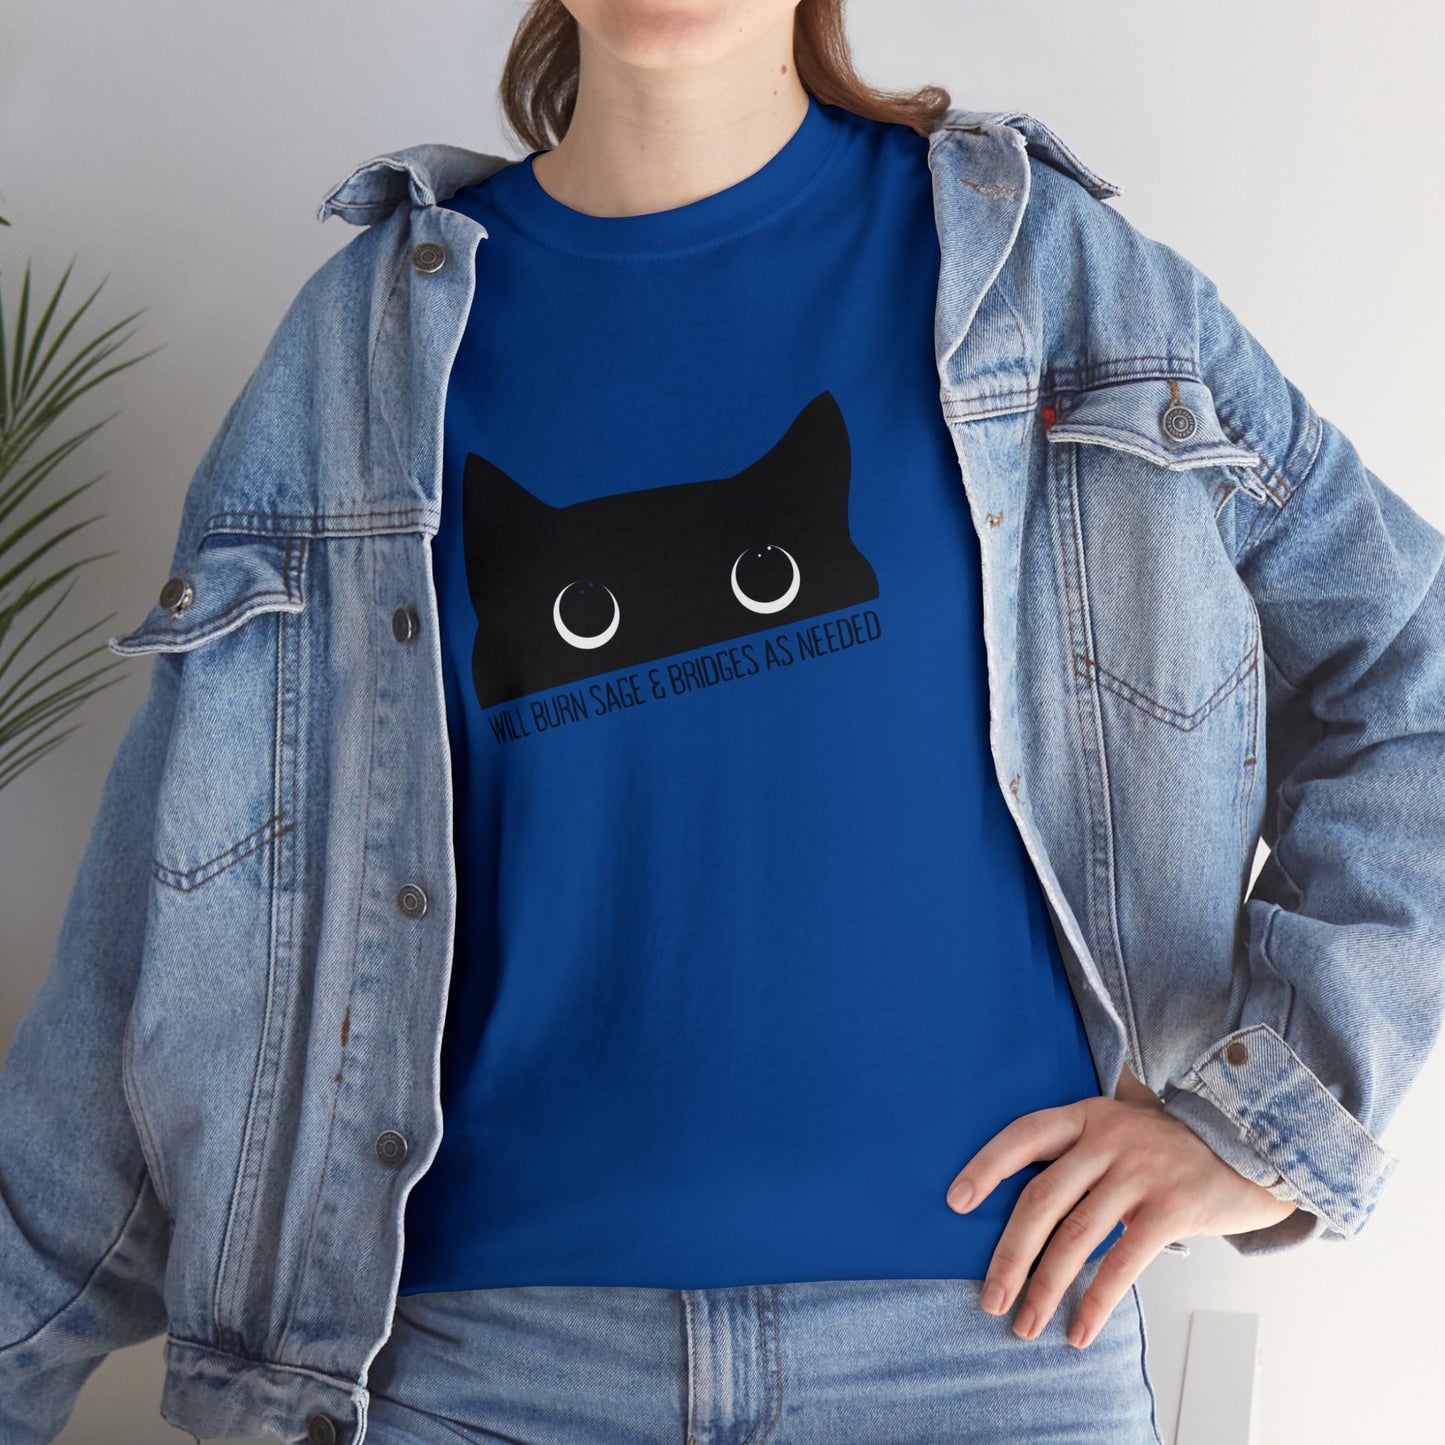 Black Cat Cotton t-shirt